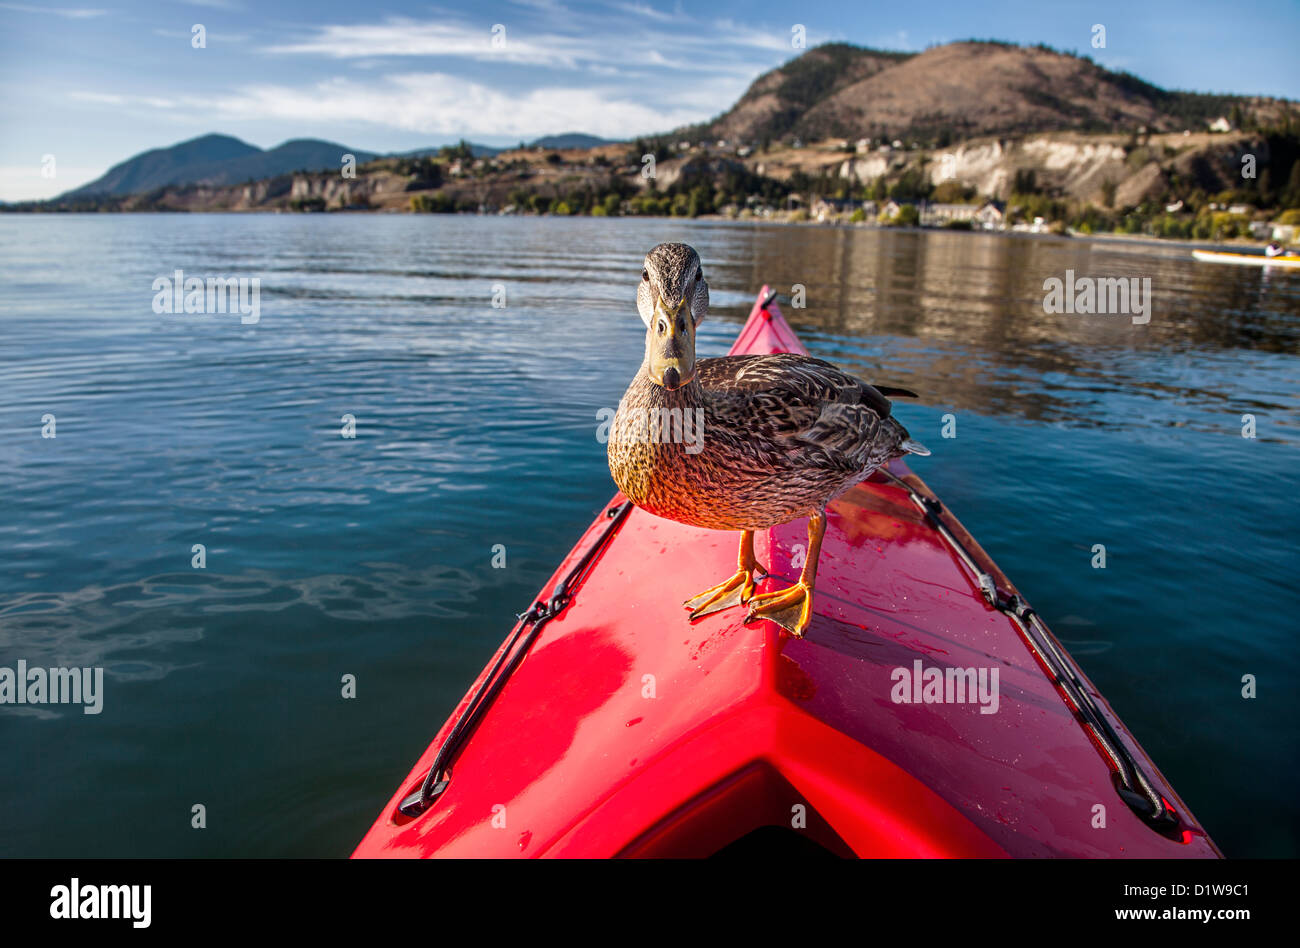 Foto exterior de un pato de pie en la proa de un kayak rojo sobre un lago Foto de stock